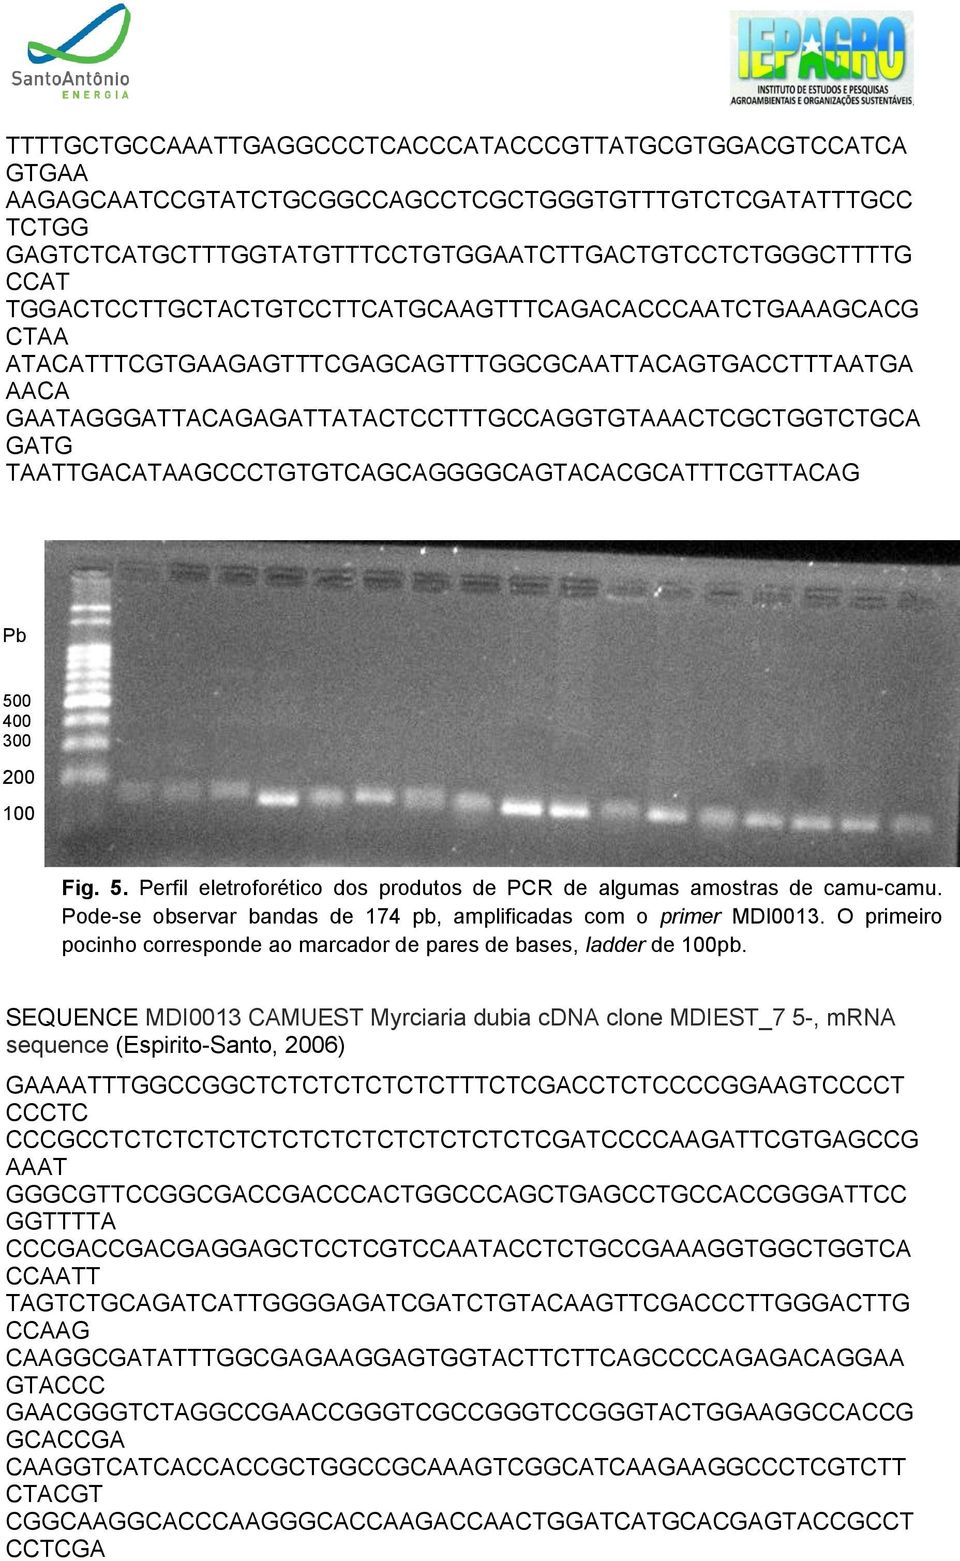 TAATTGACATAAGCCCTGTGTCAGCAGGGGCAGTACACGCATTTCGTTACAG Pb 500 400 300 200 100 Fig. 5. Perfil eletroforético dos produtos de PCR de algumas amostras de camu-camu.